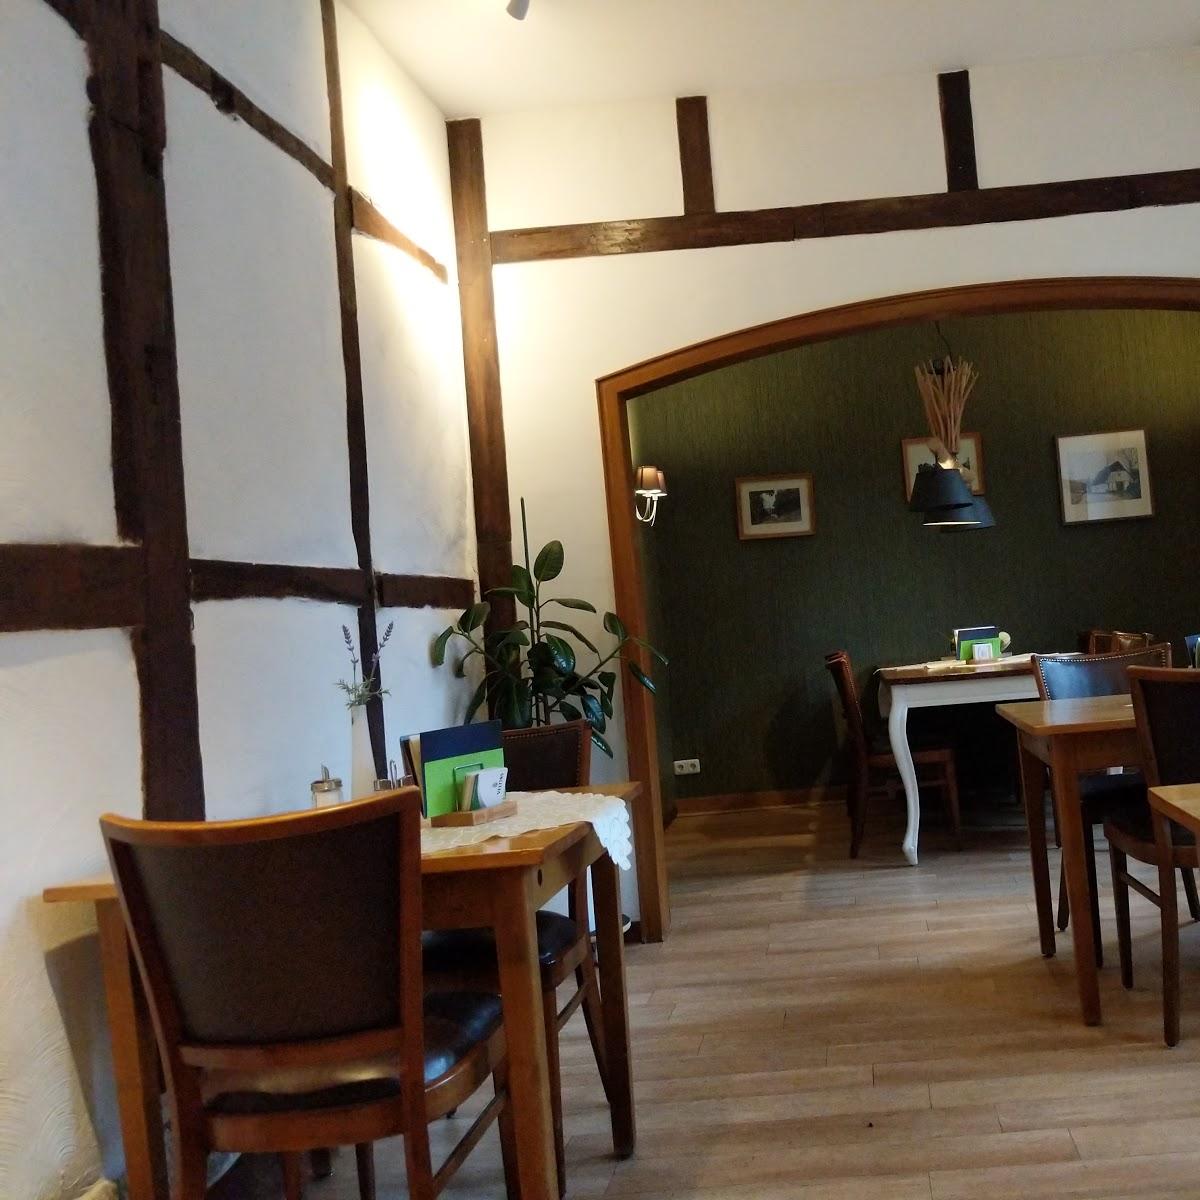 Restaurant "Historische Gaststätte Franz" in Tecklenburg